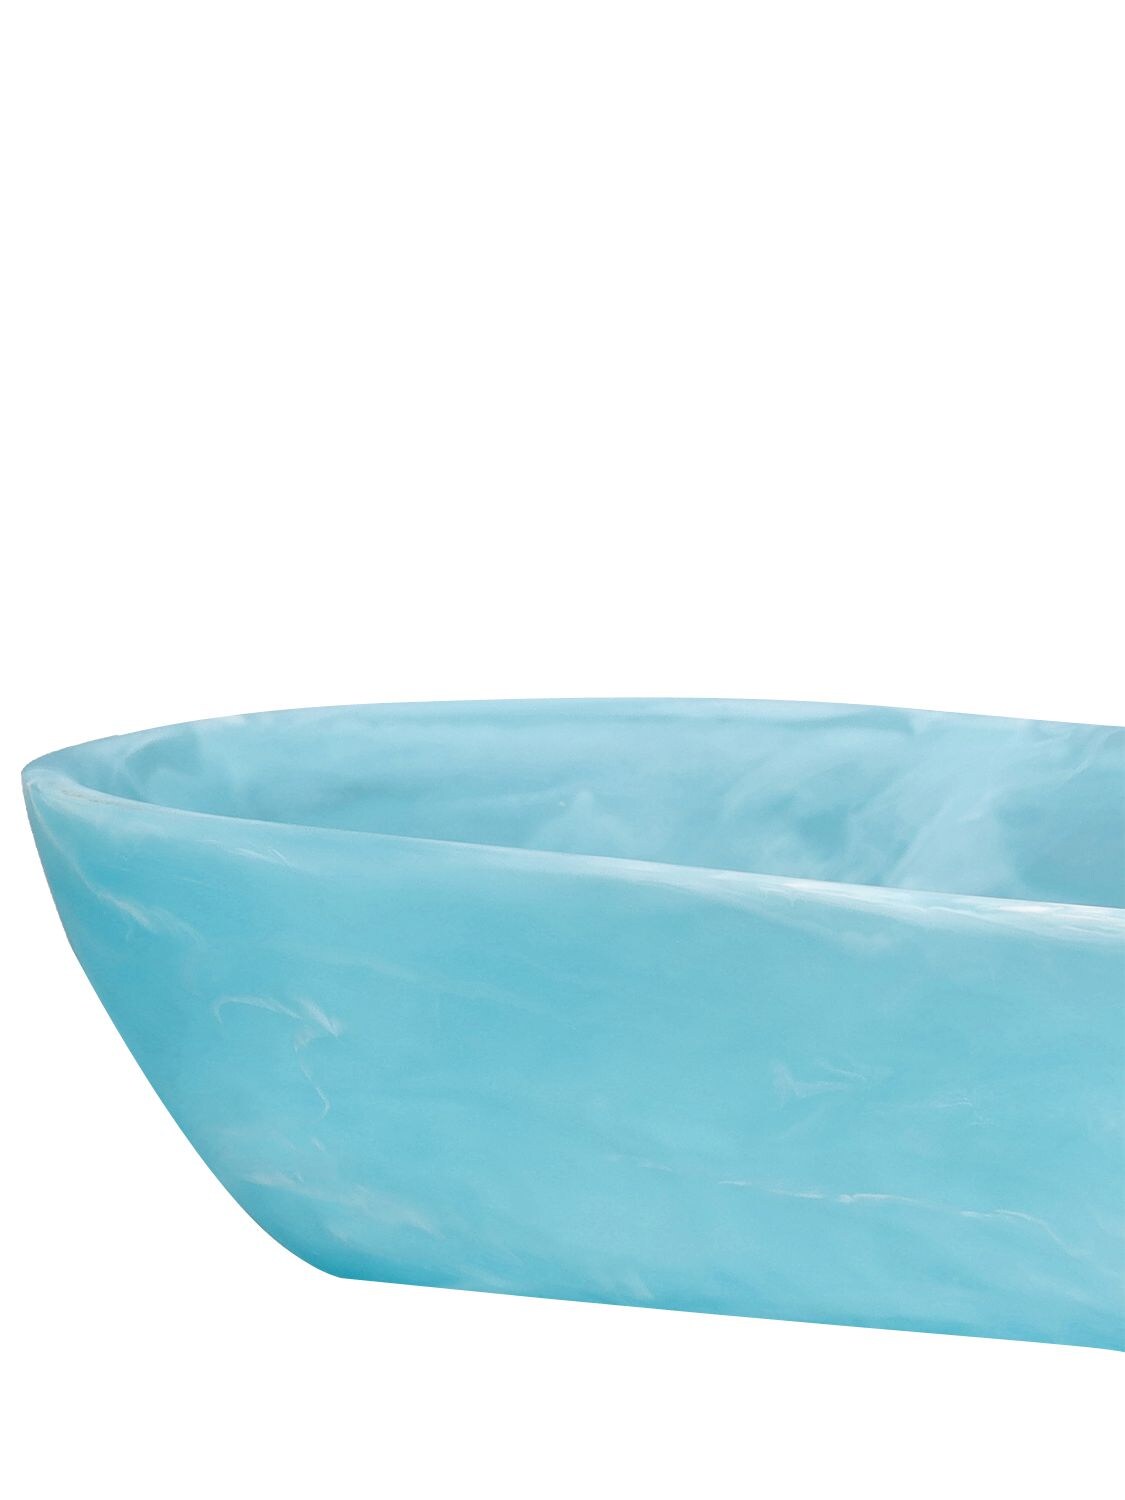 Shop Nashi Home Boat Bowl In Blue